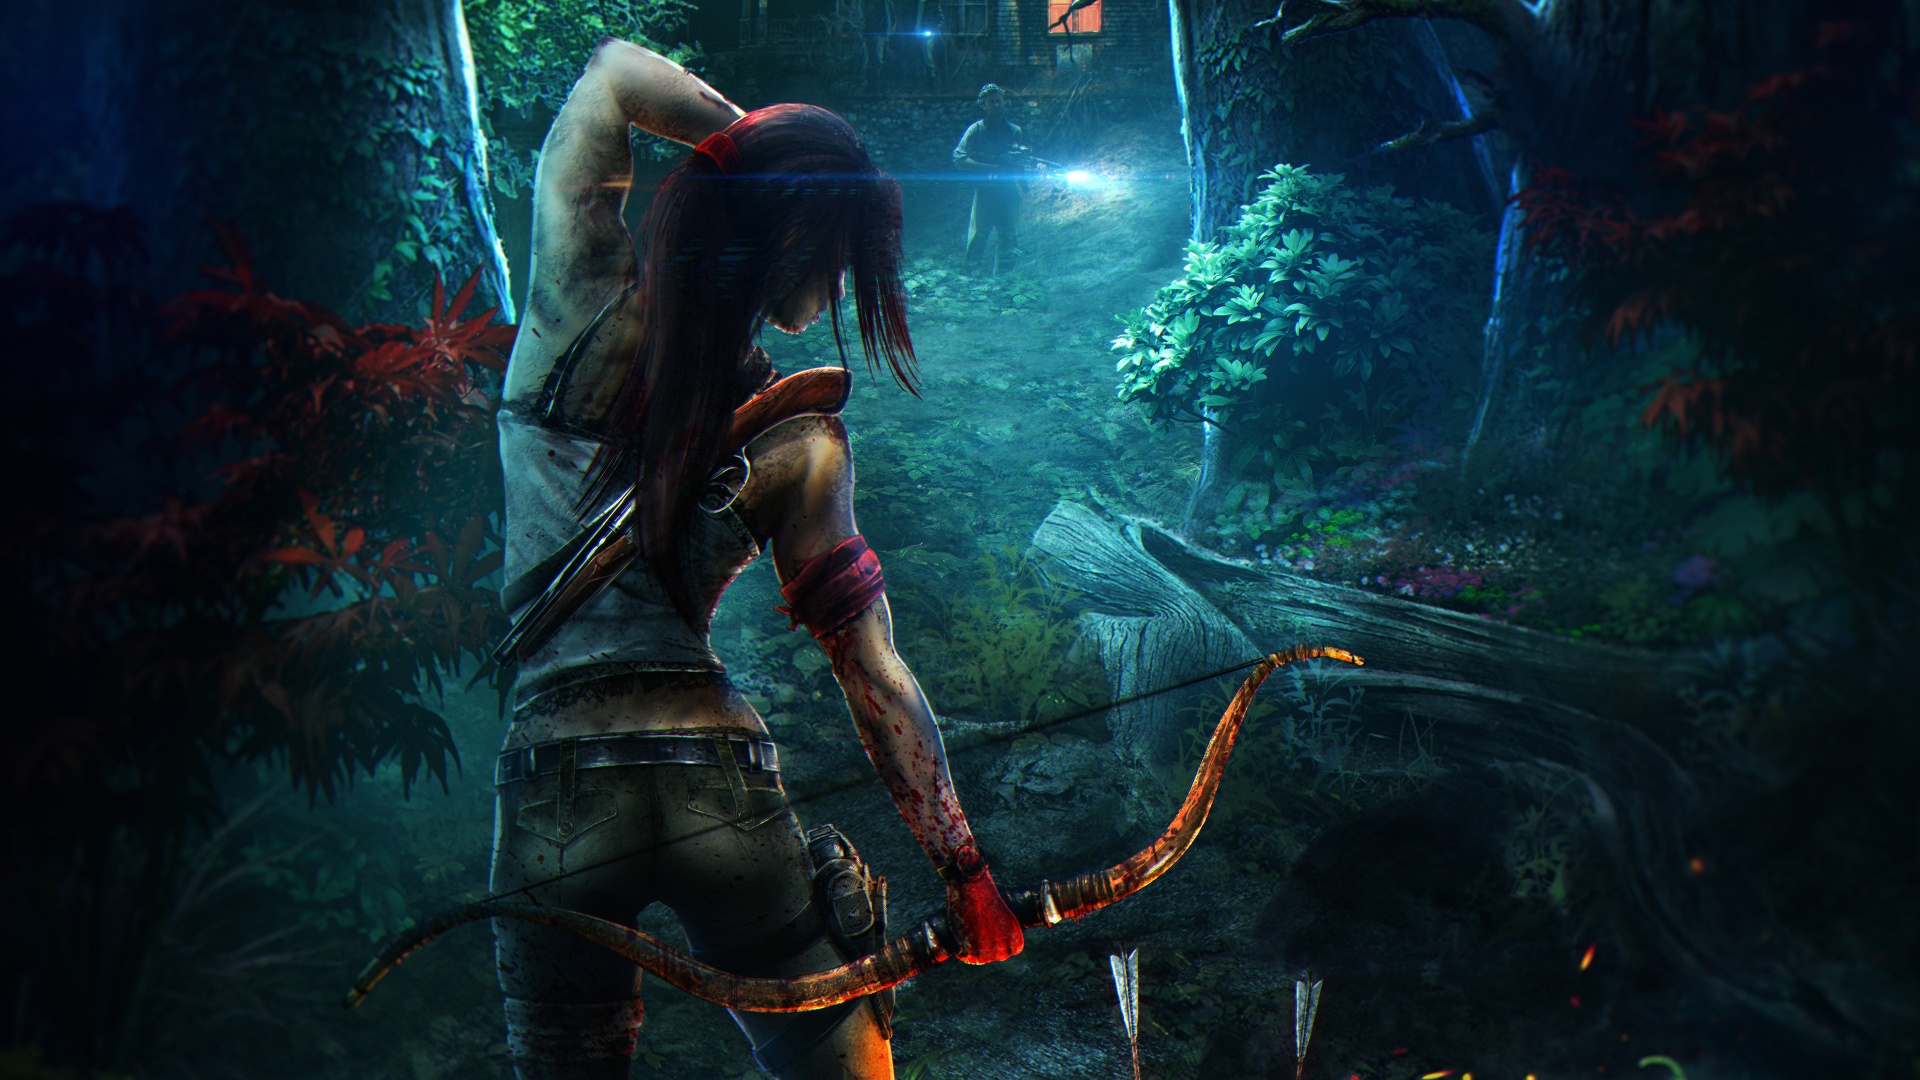 Tải game Tomb Raider: Bạn đã sẵn sàng trở thành Lara Croft - một nhà khảo cổ phiêu lưu, điều tra những di tích cổ đại và đối đầu với các thế lực nguy hiểm nhất trên thế giới? Tải ngay Tomb Raider và khám phá một trong những loạt game hành động, phiêu lưu hàng đầu thế giới. Sẽ không có lựa chọn nào tuyệt vời hơn cho những ai yêu thích thể loại game này!